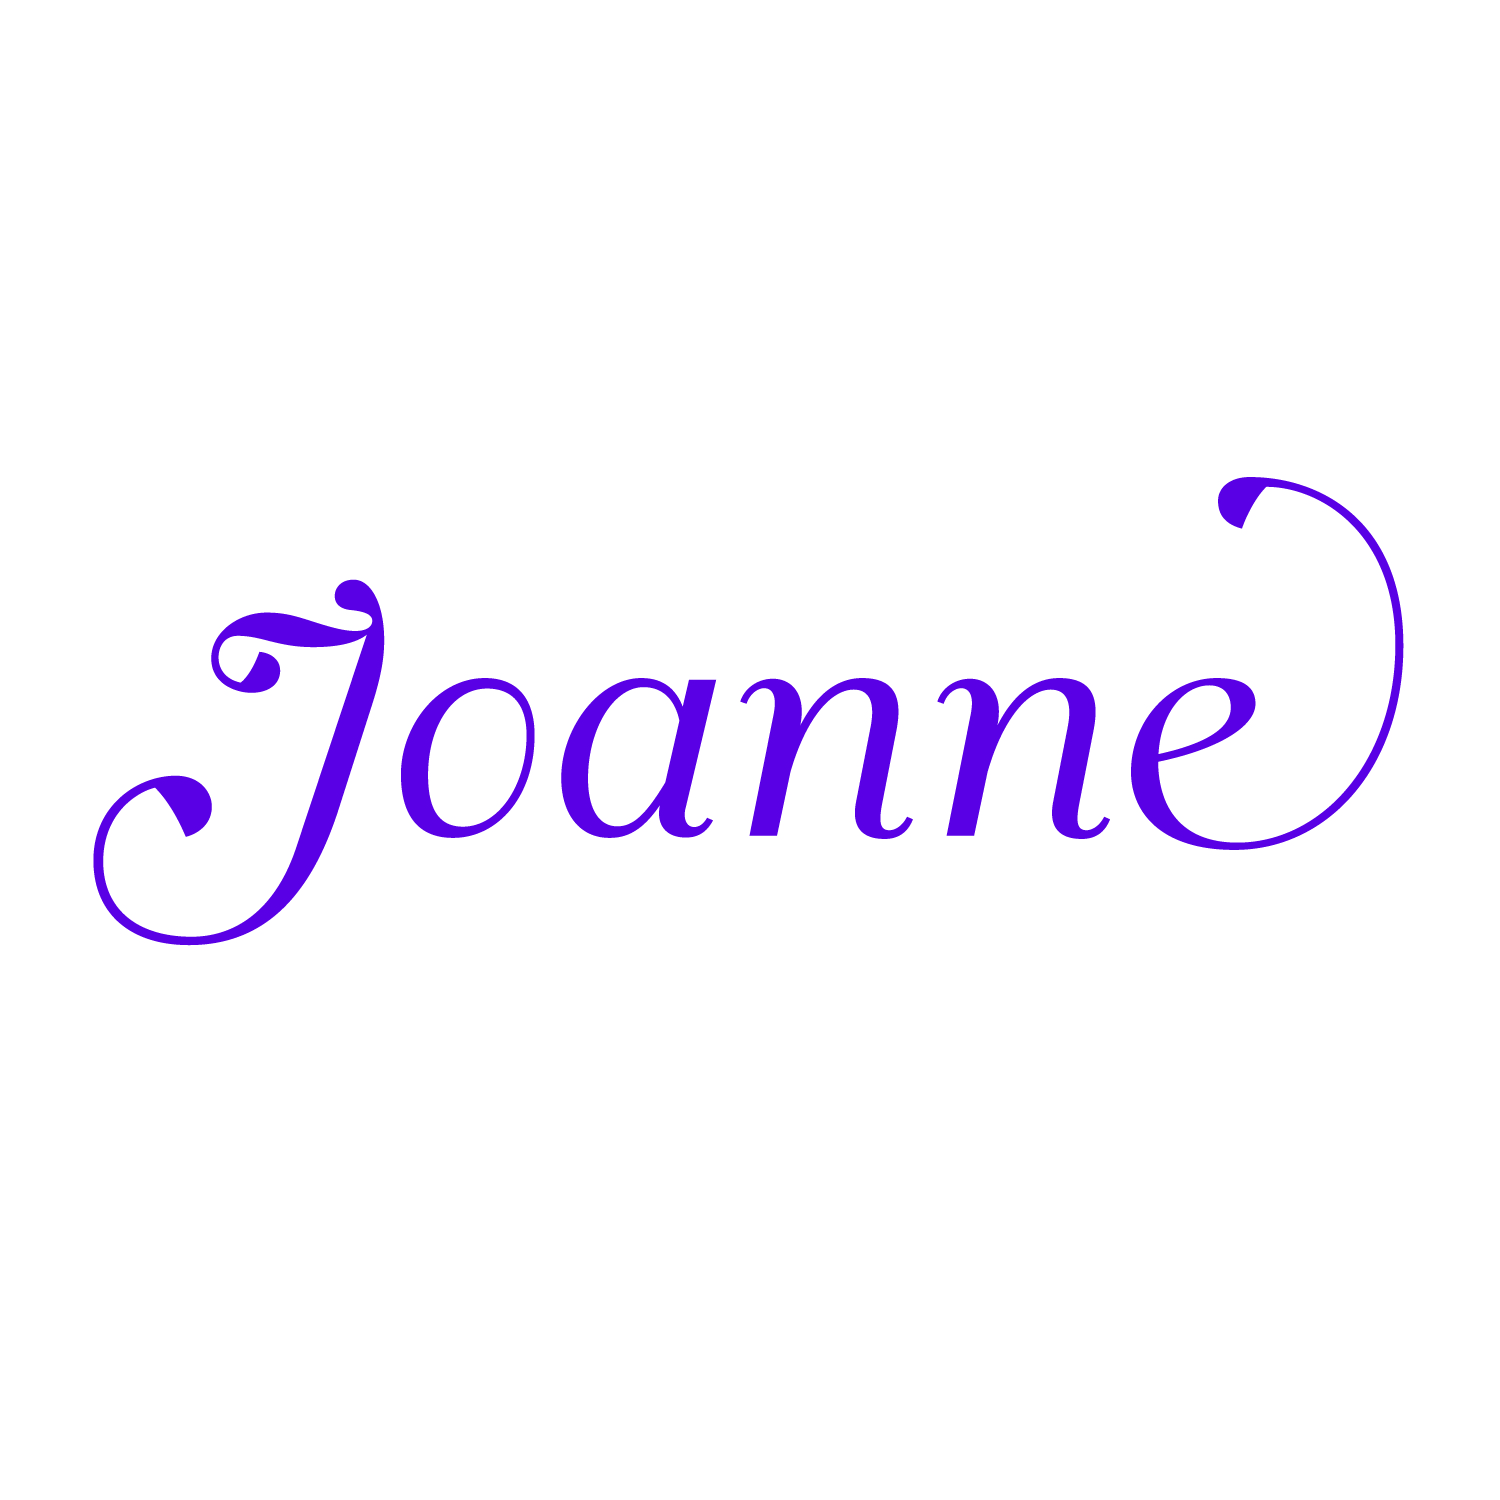 Joanne_Poshmark_Logotype.jpg